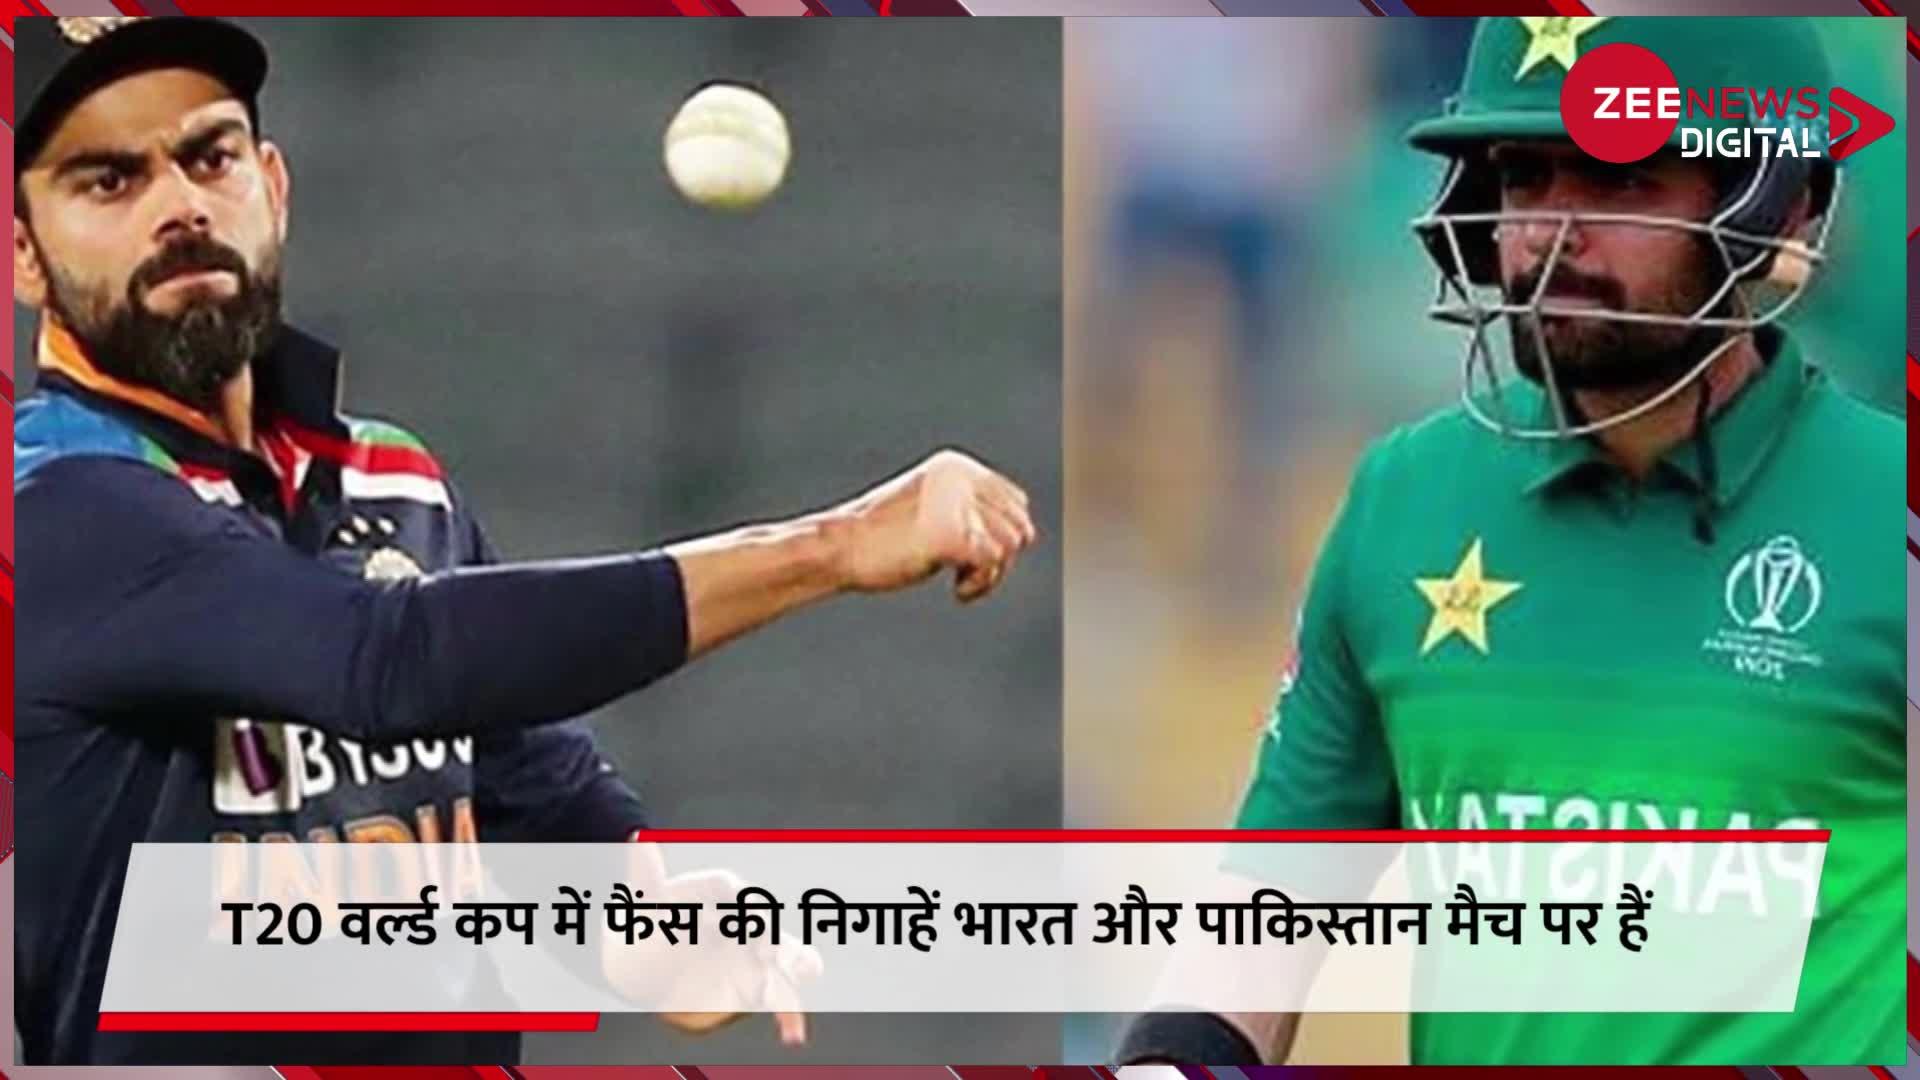 ऑस्ट्रेलिया के टॉम मूडी ने पाकिस्तान के खिलाफ मुकाबले के लिए टीम इंडिया के तेज गेंदबाजों का चुनाव किया